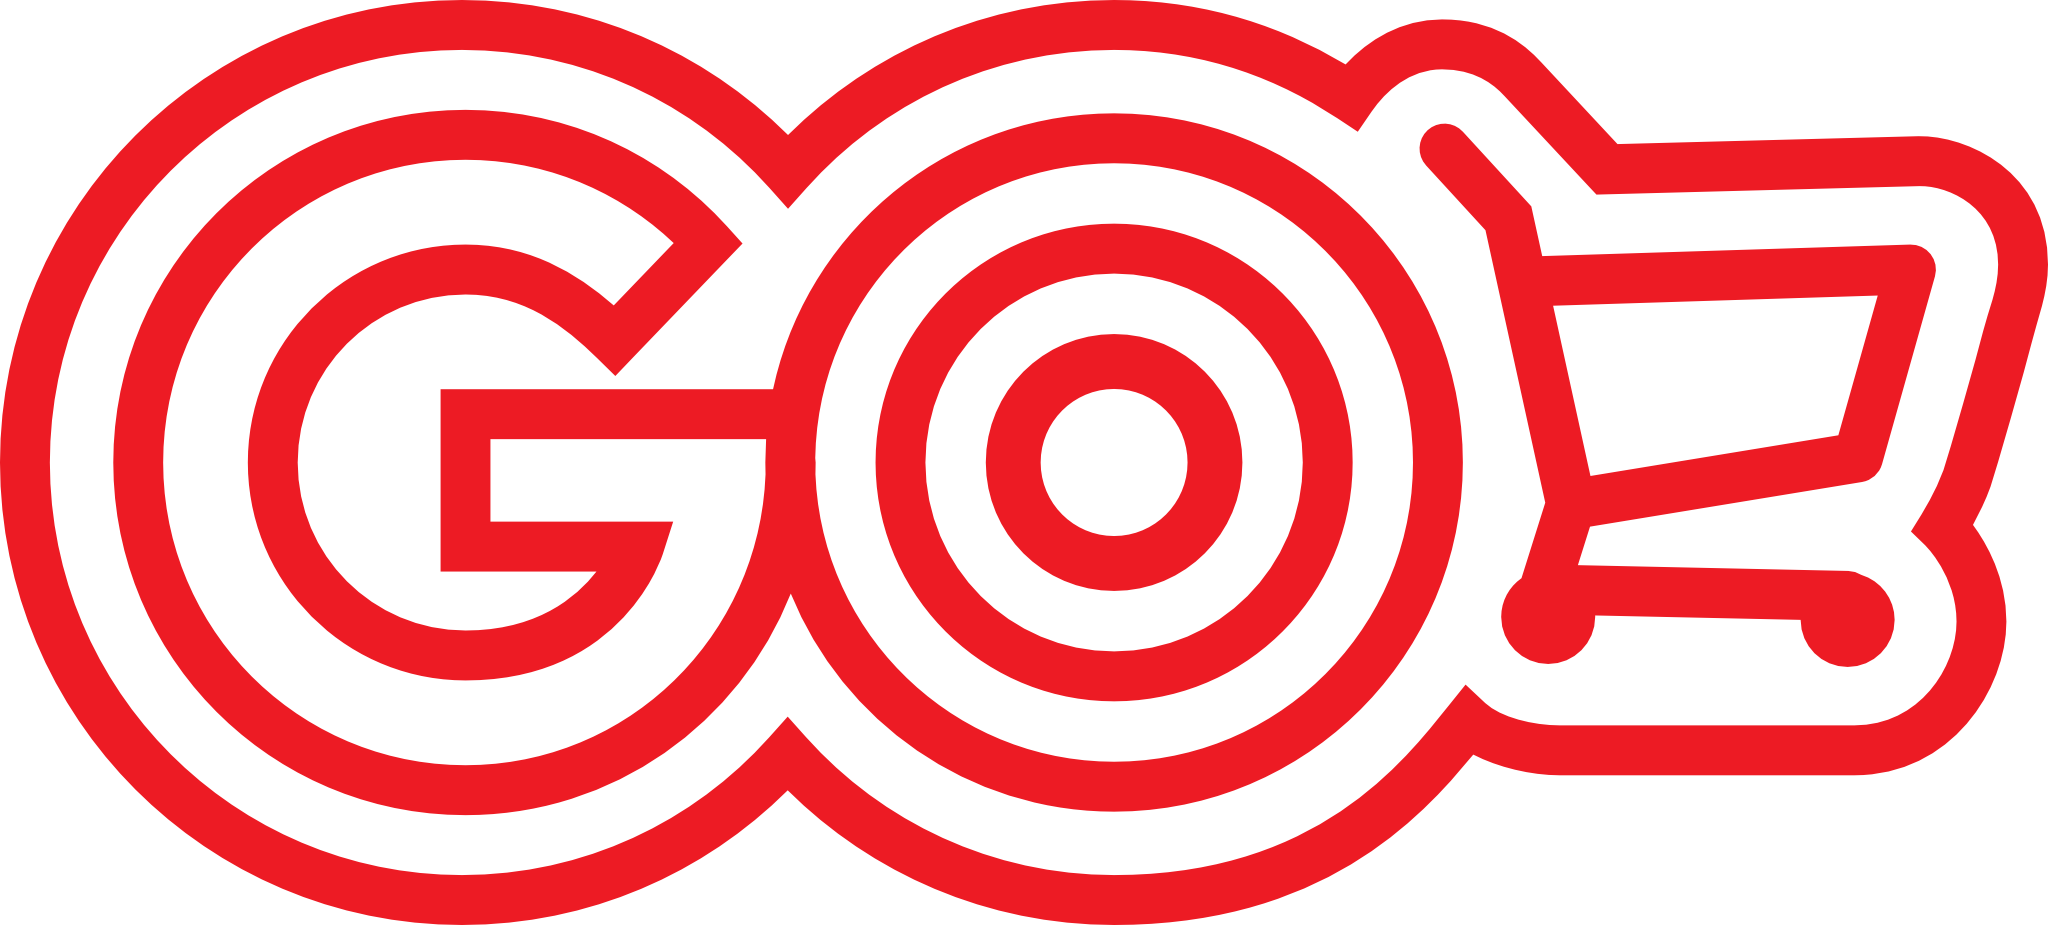 100,000 Go logo Vector Images | Depositphotos